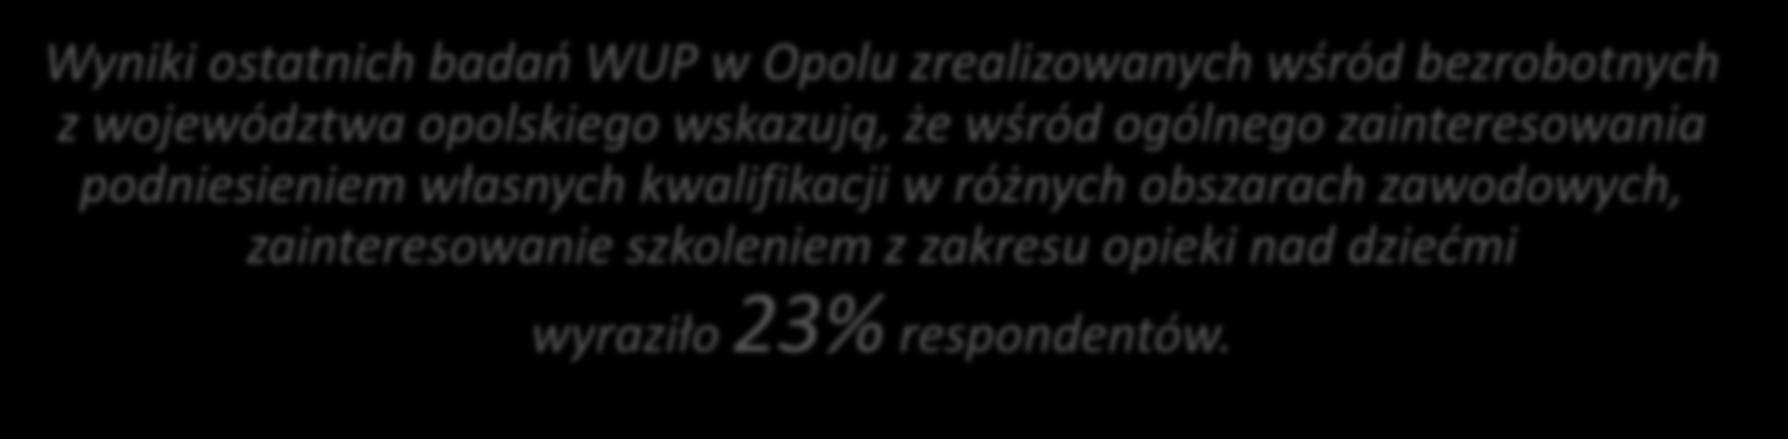 Wyniki ostatnich badań WUP w Opolu zrealizowanych wśród bezrobotnych z województwa opolskiego wskazują, że wśród ogólnego zainteresowania podniesieniem własnych kwalifikacji w różnych obszarach